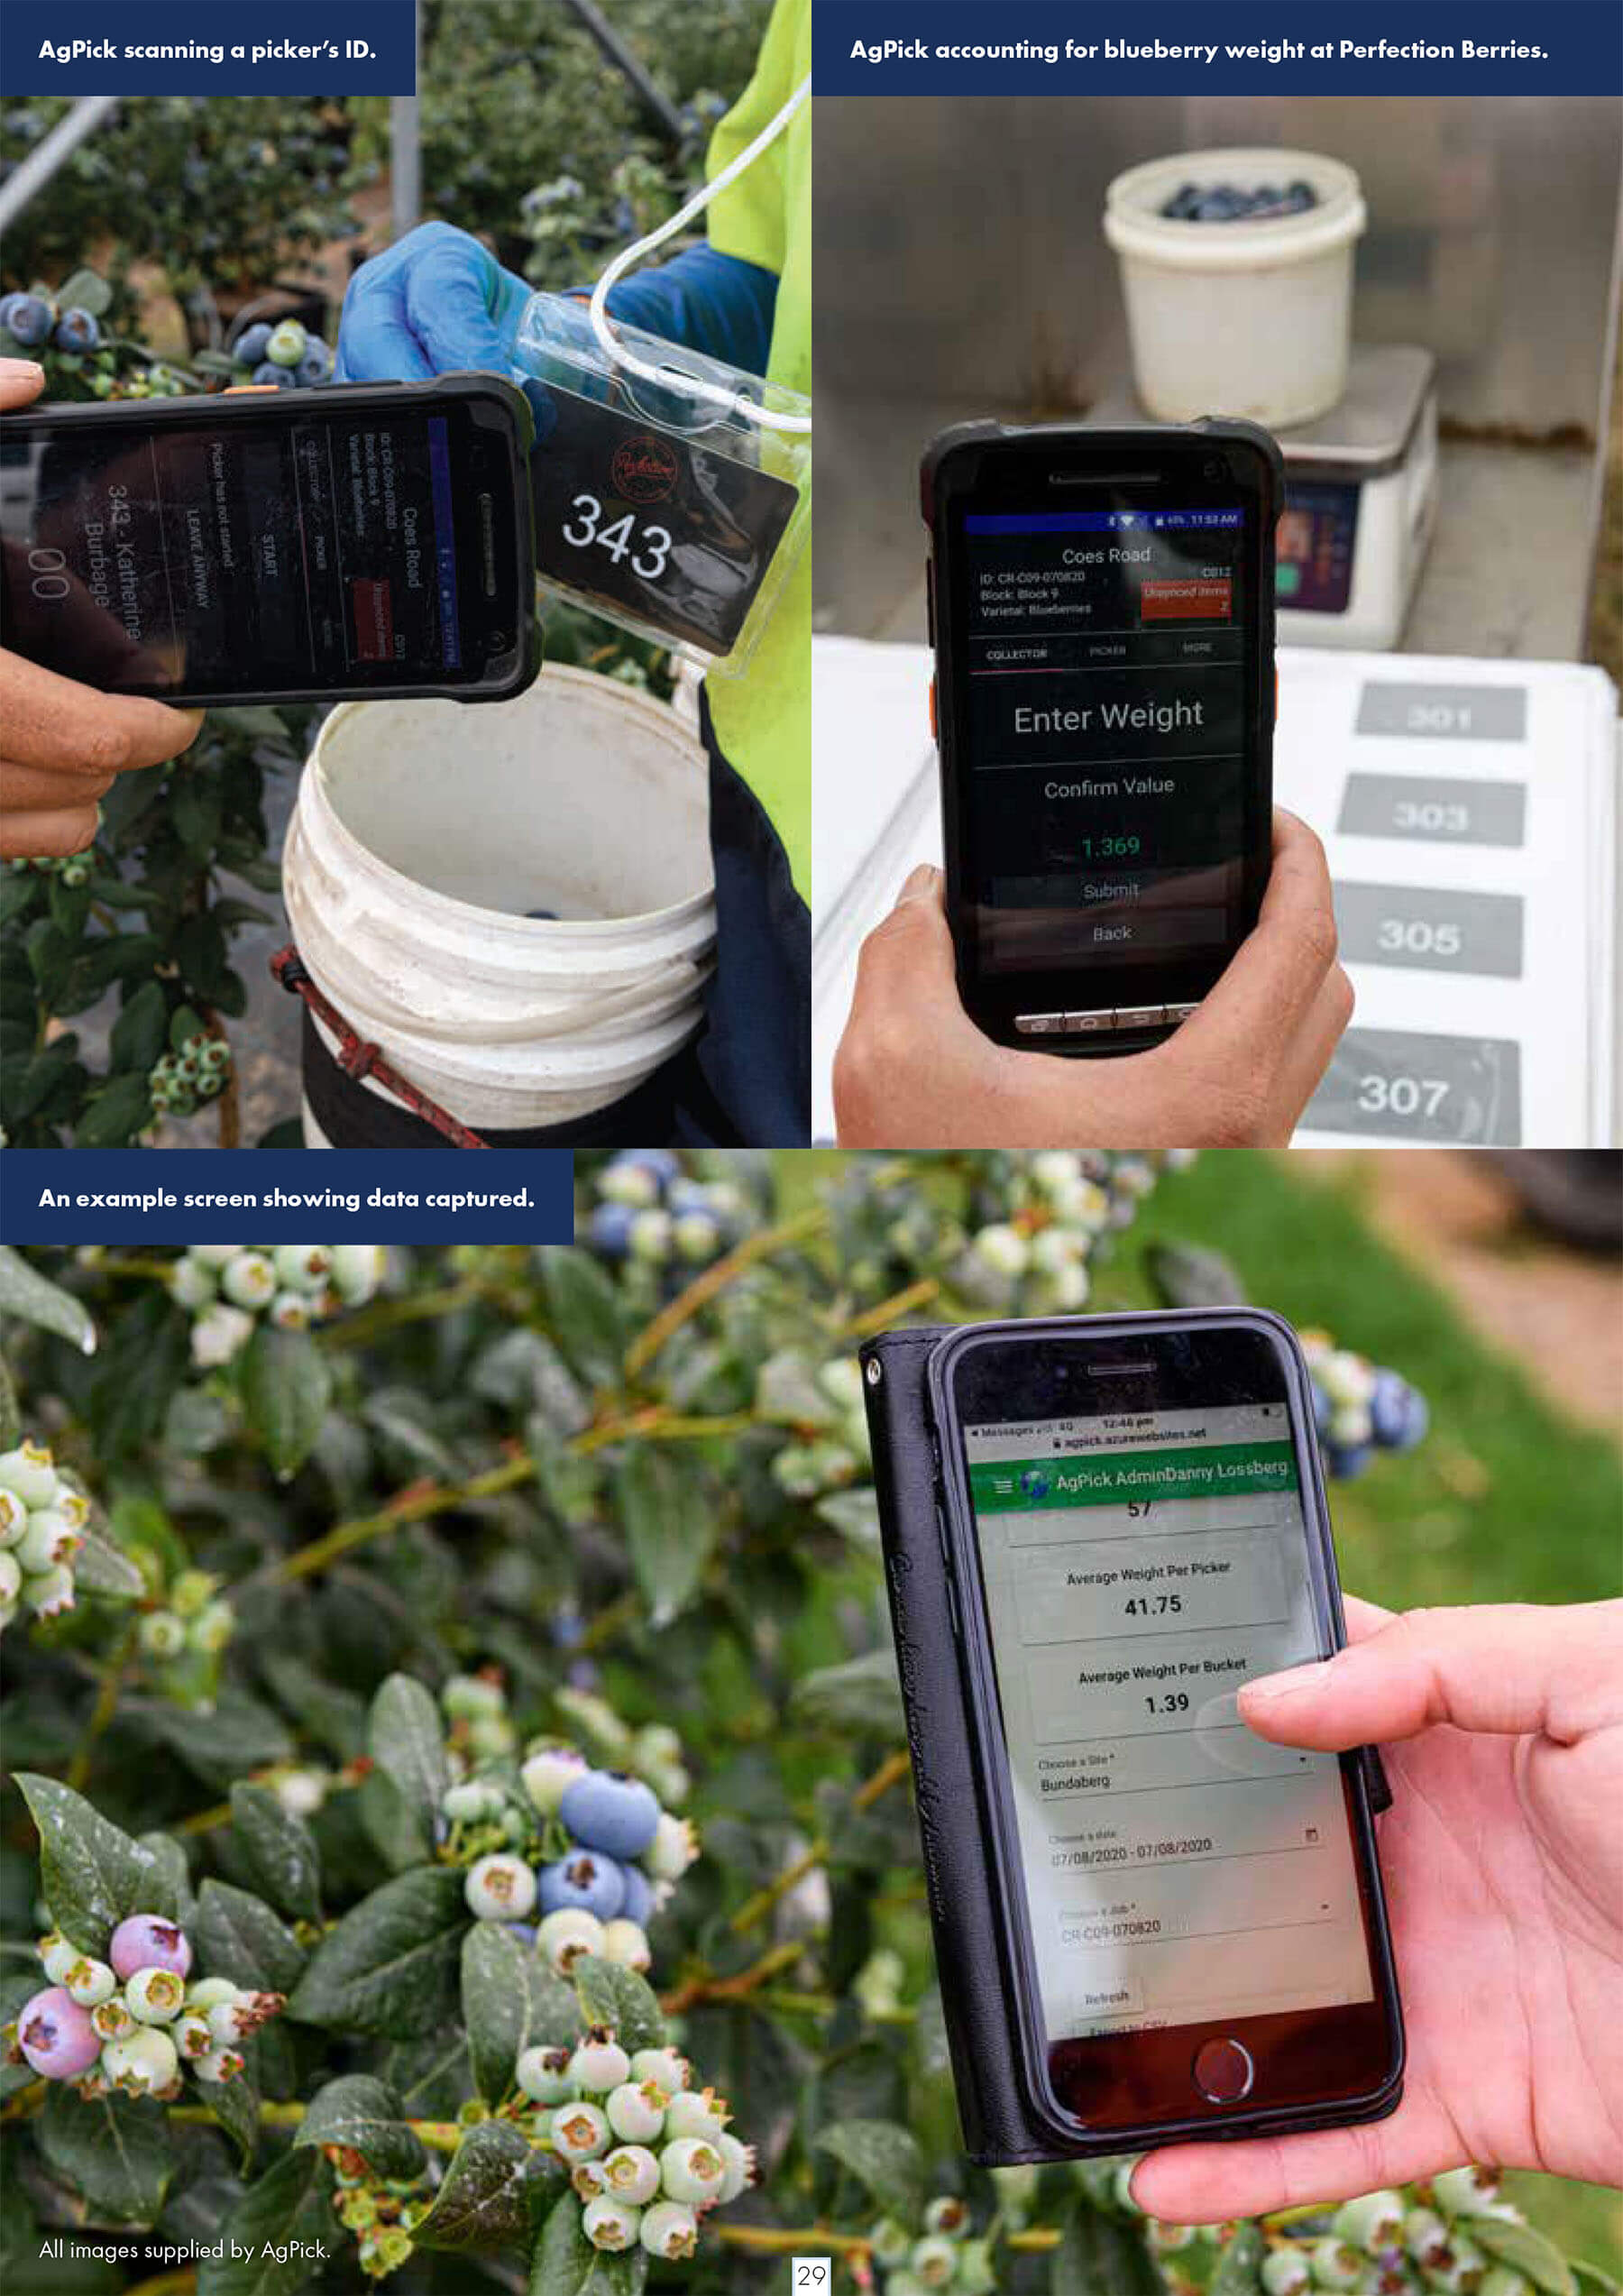 Australian Berry Journal - Harvest Technology - AgPick